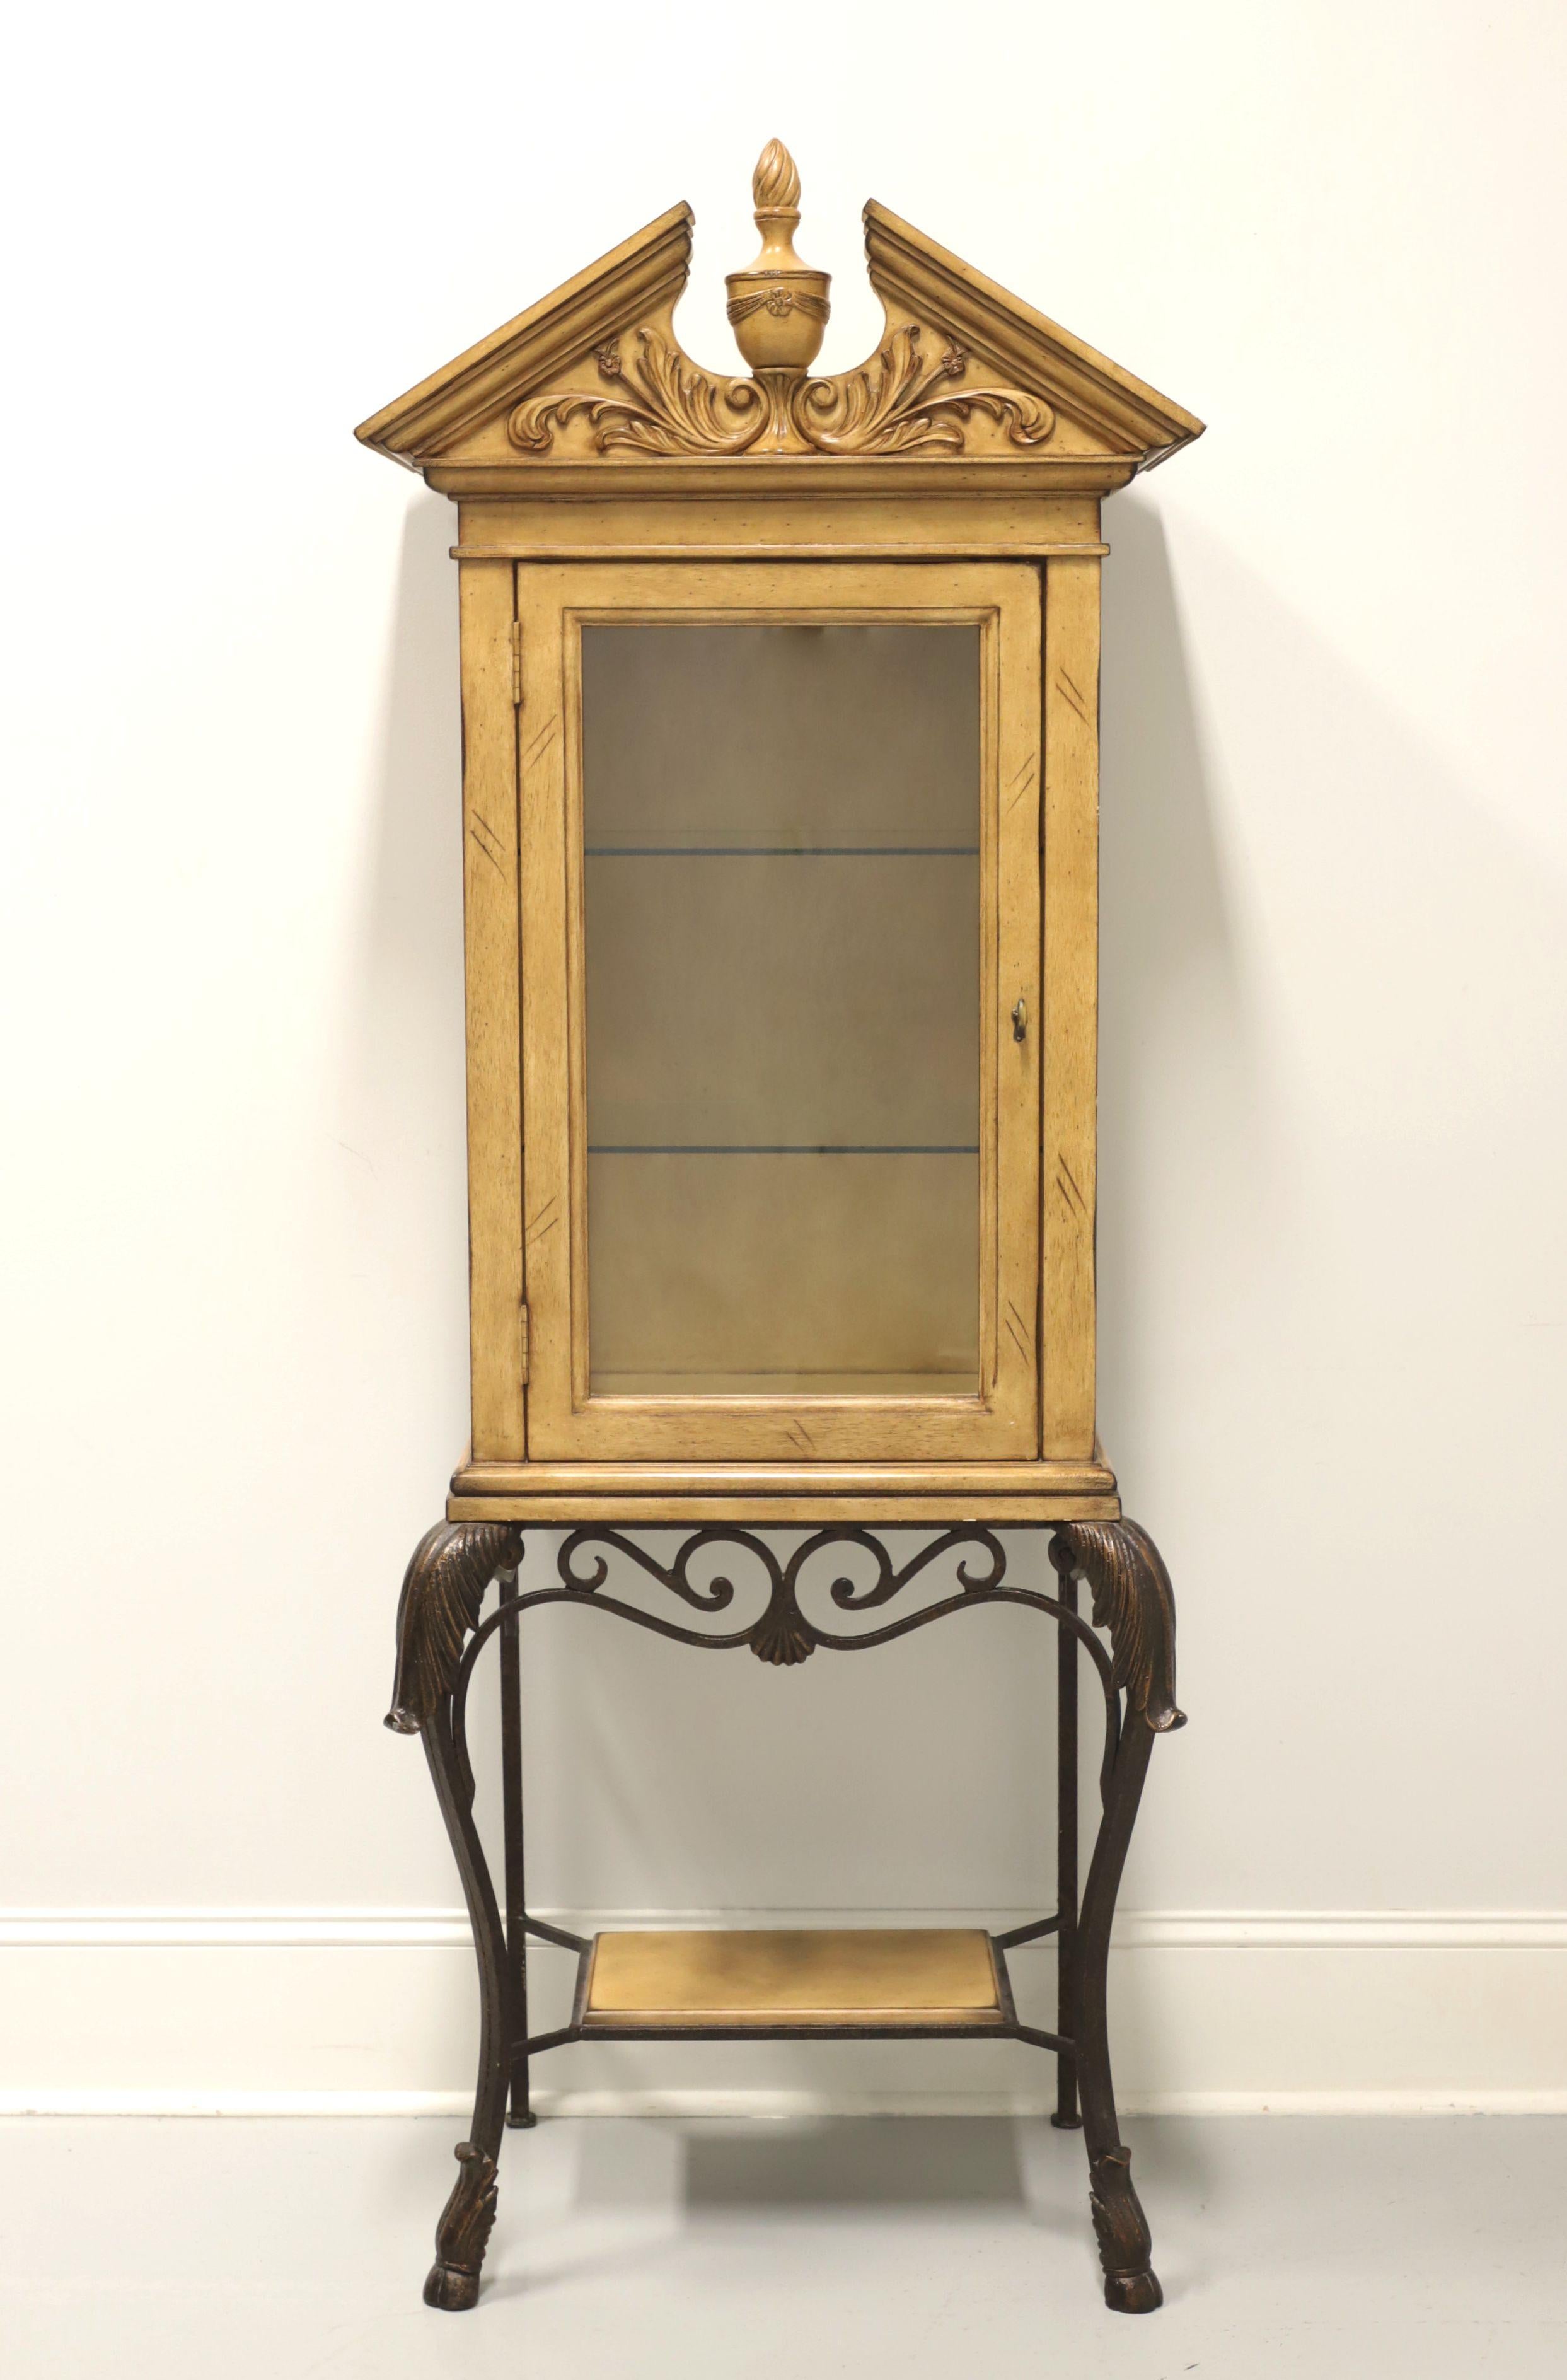 Une vitrine diminutive de style Transitionnel par Pulaski Furniture. Meuble en bois dur massif, finition vieillie, quincaillerie en laiton, plateau à fronton avec fleuron central, surmonté d'une base décorative en métal couleur bronze avec feuilles